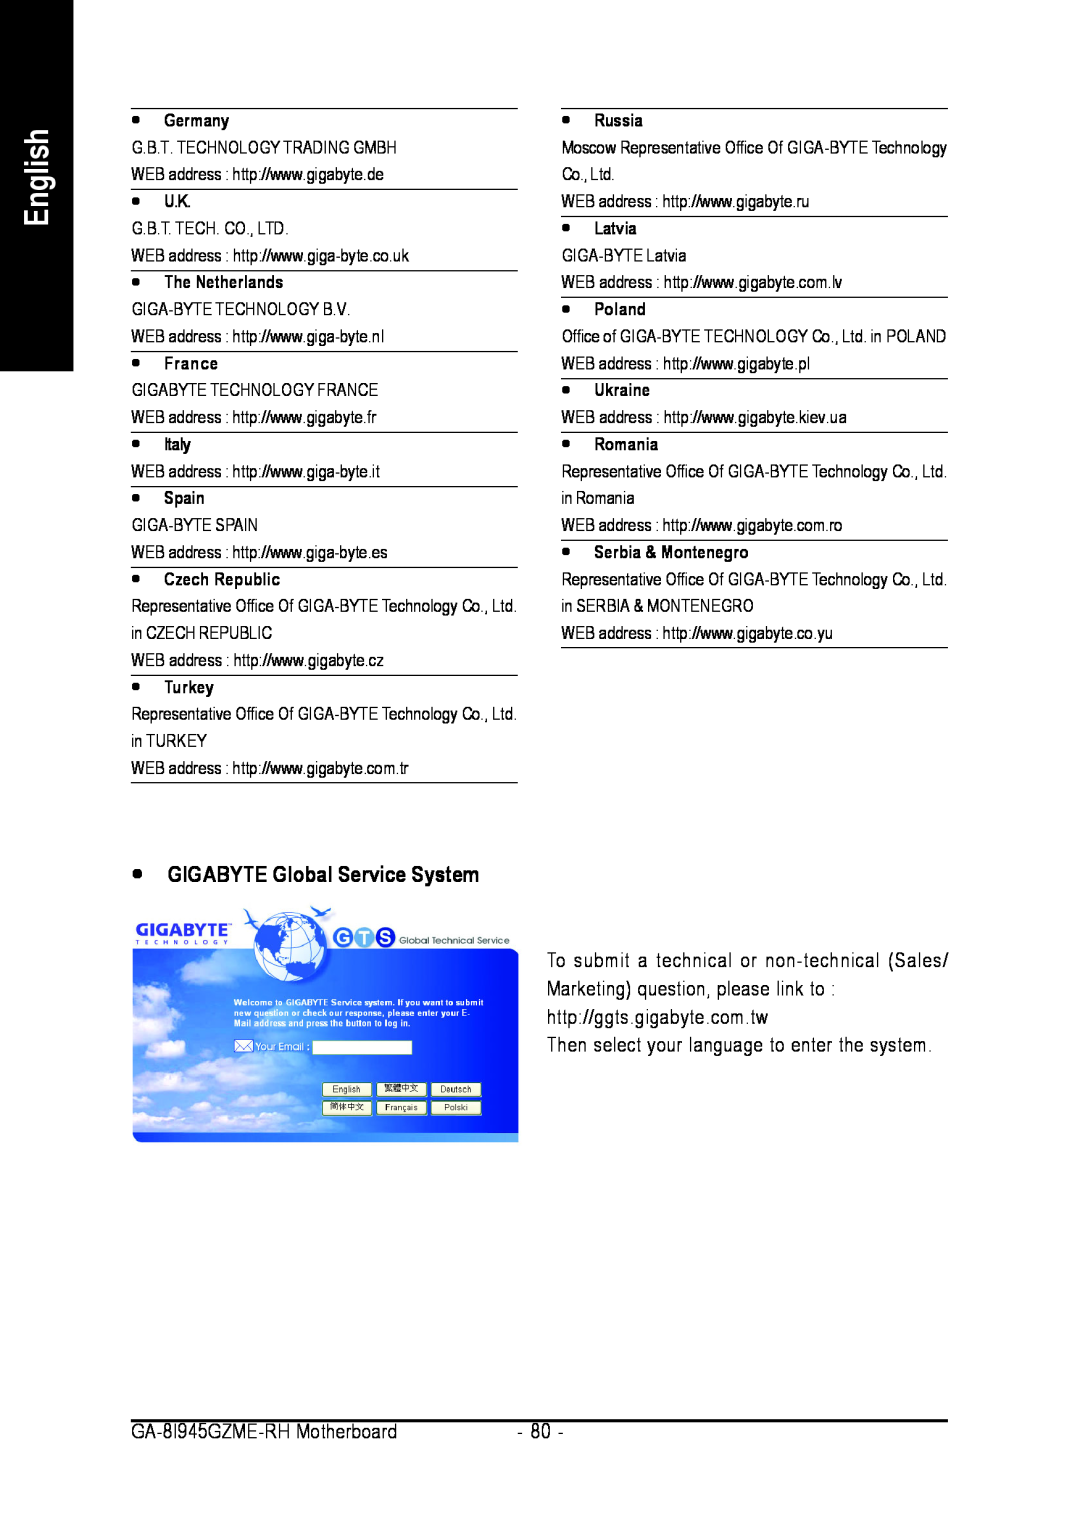 Intel GA-8I945GZME-RH user manual y GIGABYTE Global Service System, English 